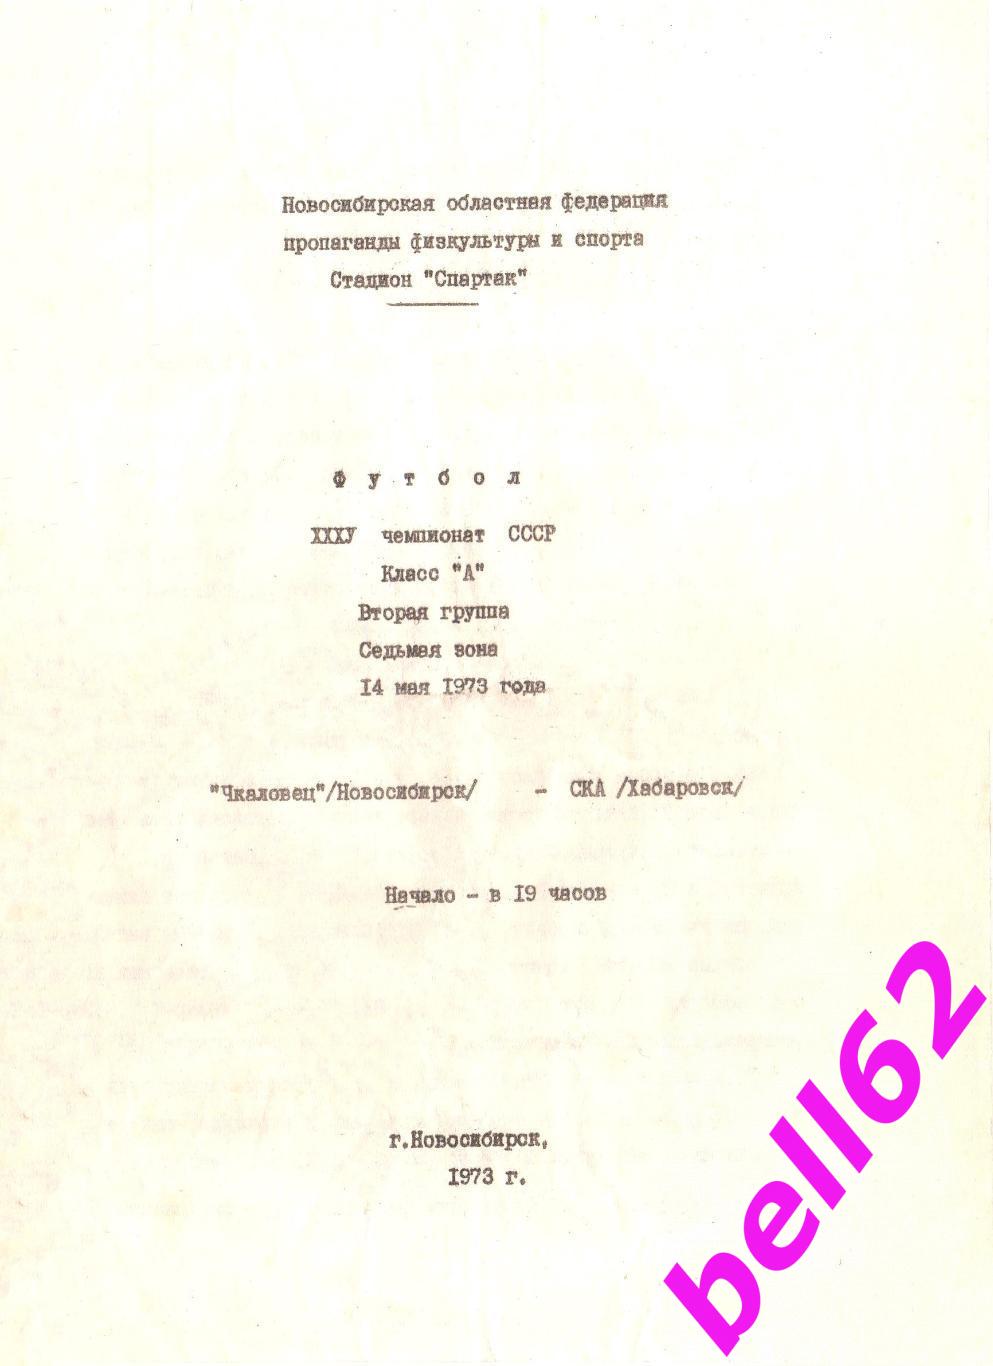 Чкаловец Новосибирск-СКА Хабаровск-14.05.1973 г. См. ниже.